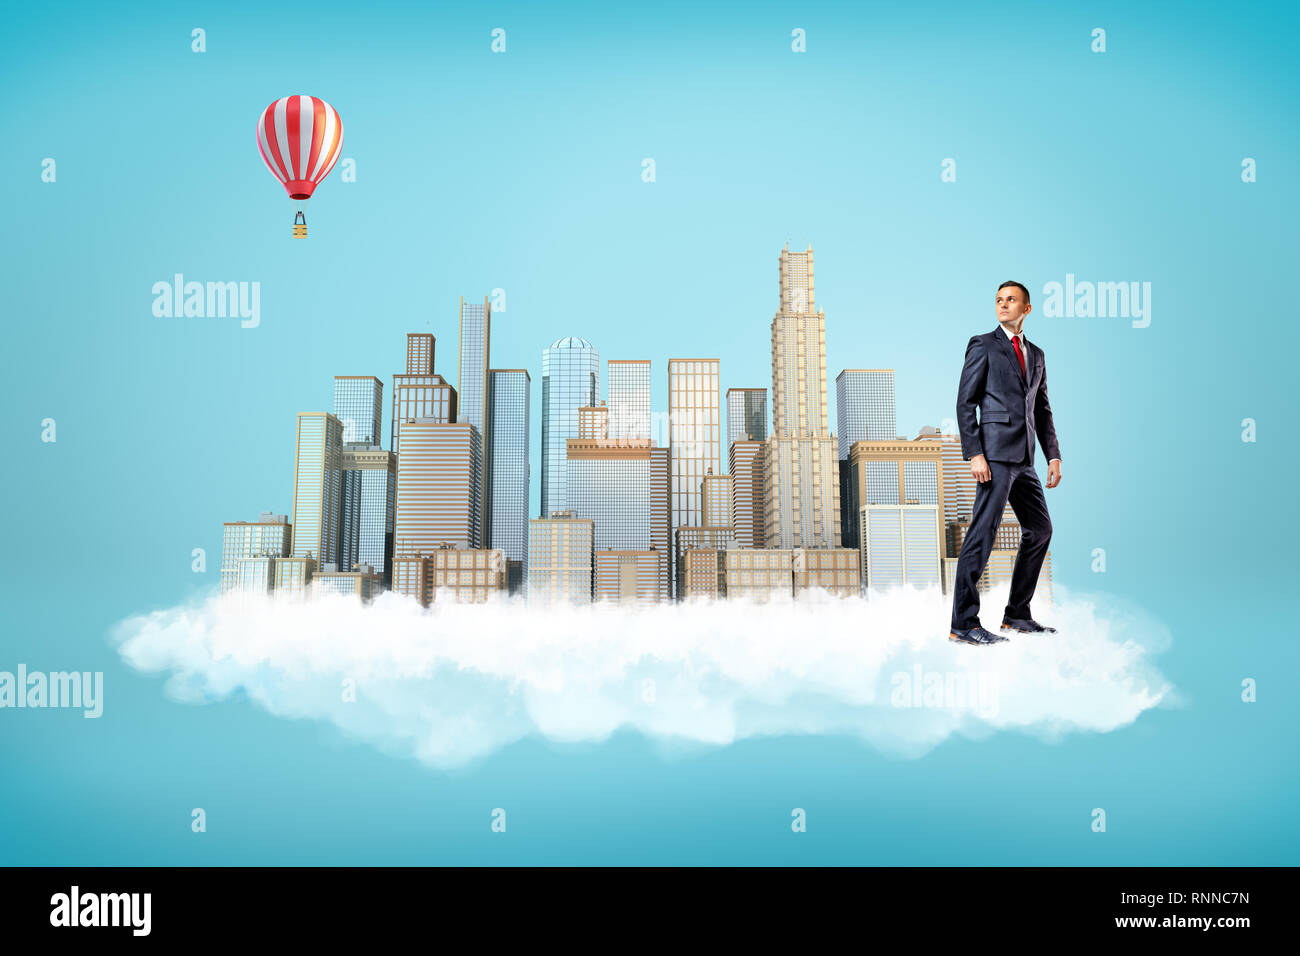 Businessman with city skyscrapers sur nuage blanc et ballon à air chaud dans l'air sur fond bleu. Les personnes et les objets de l'art conceptuel. Bâtiment et stru Banque D'Images